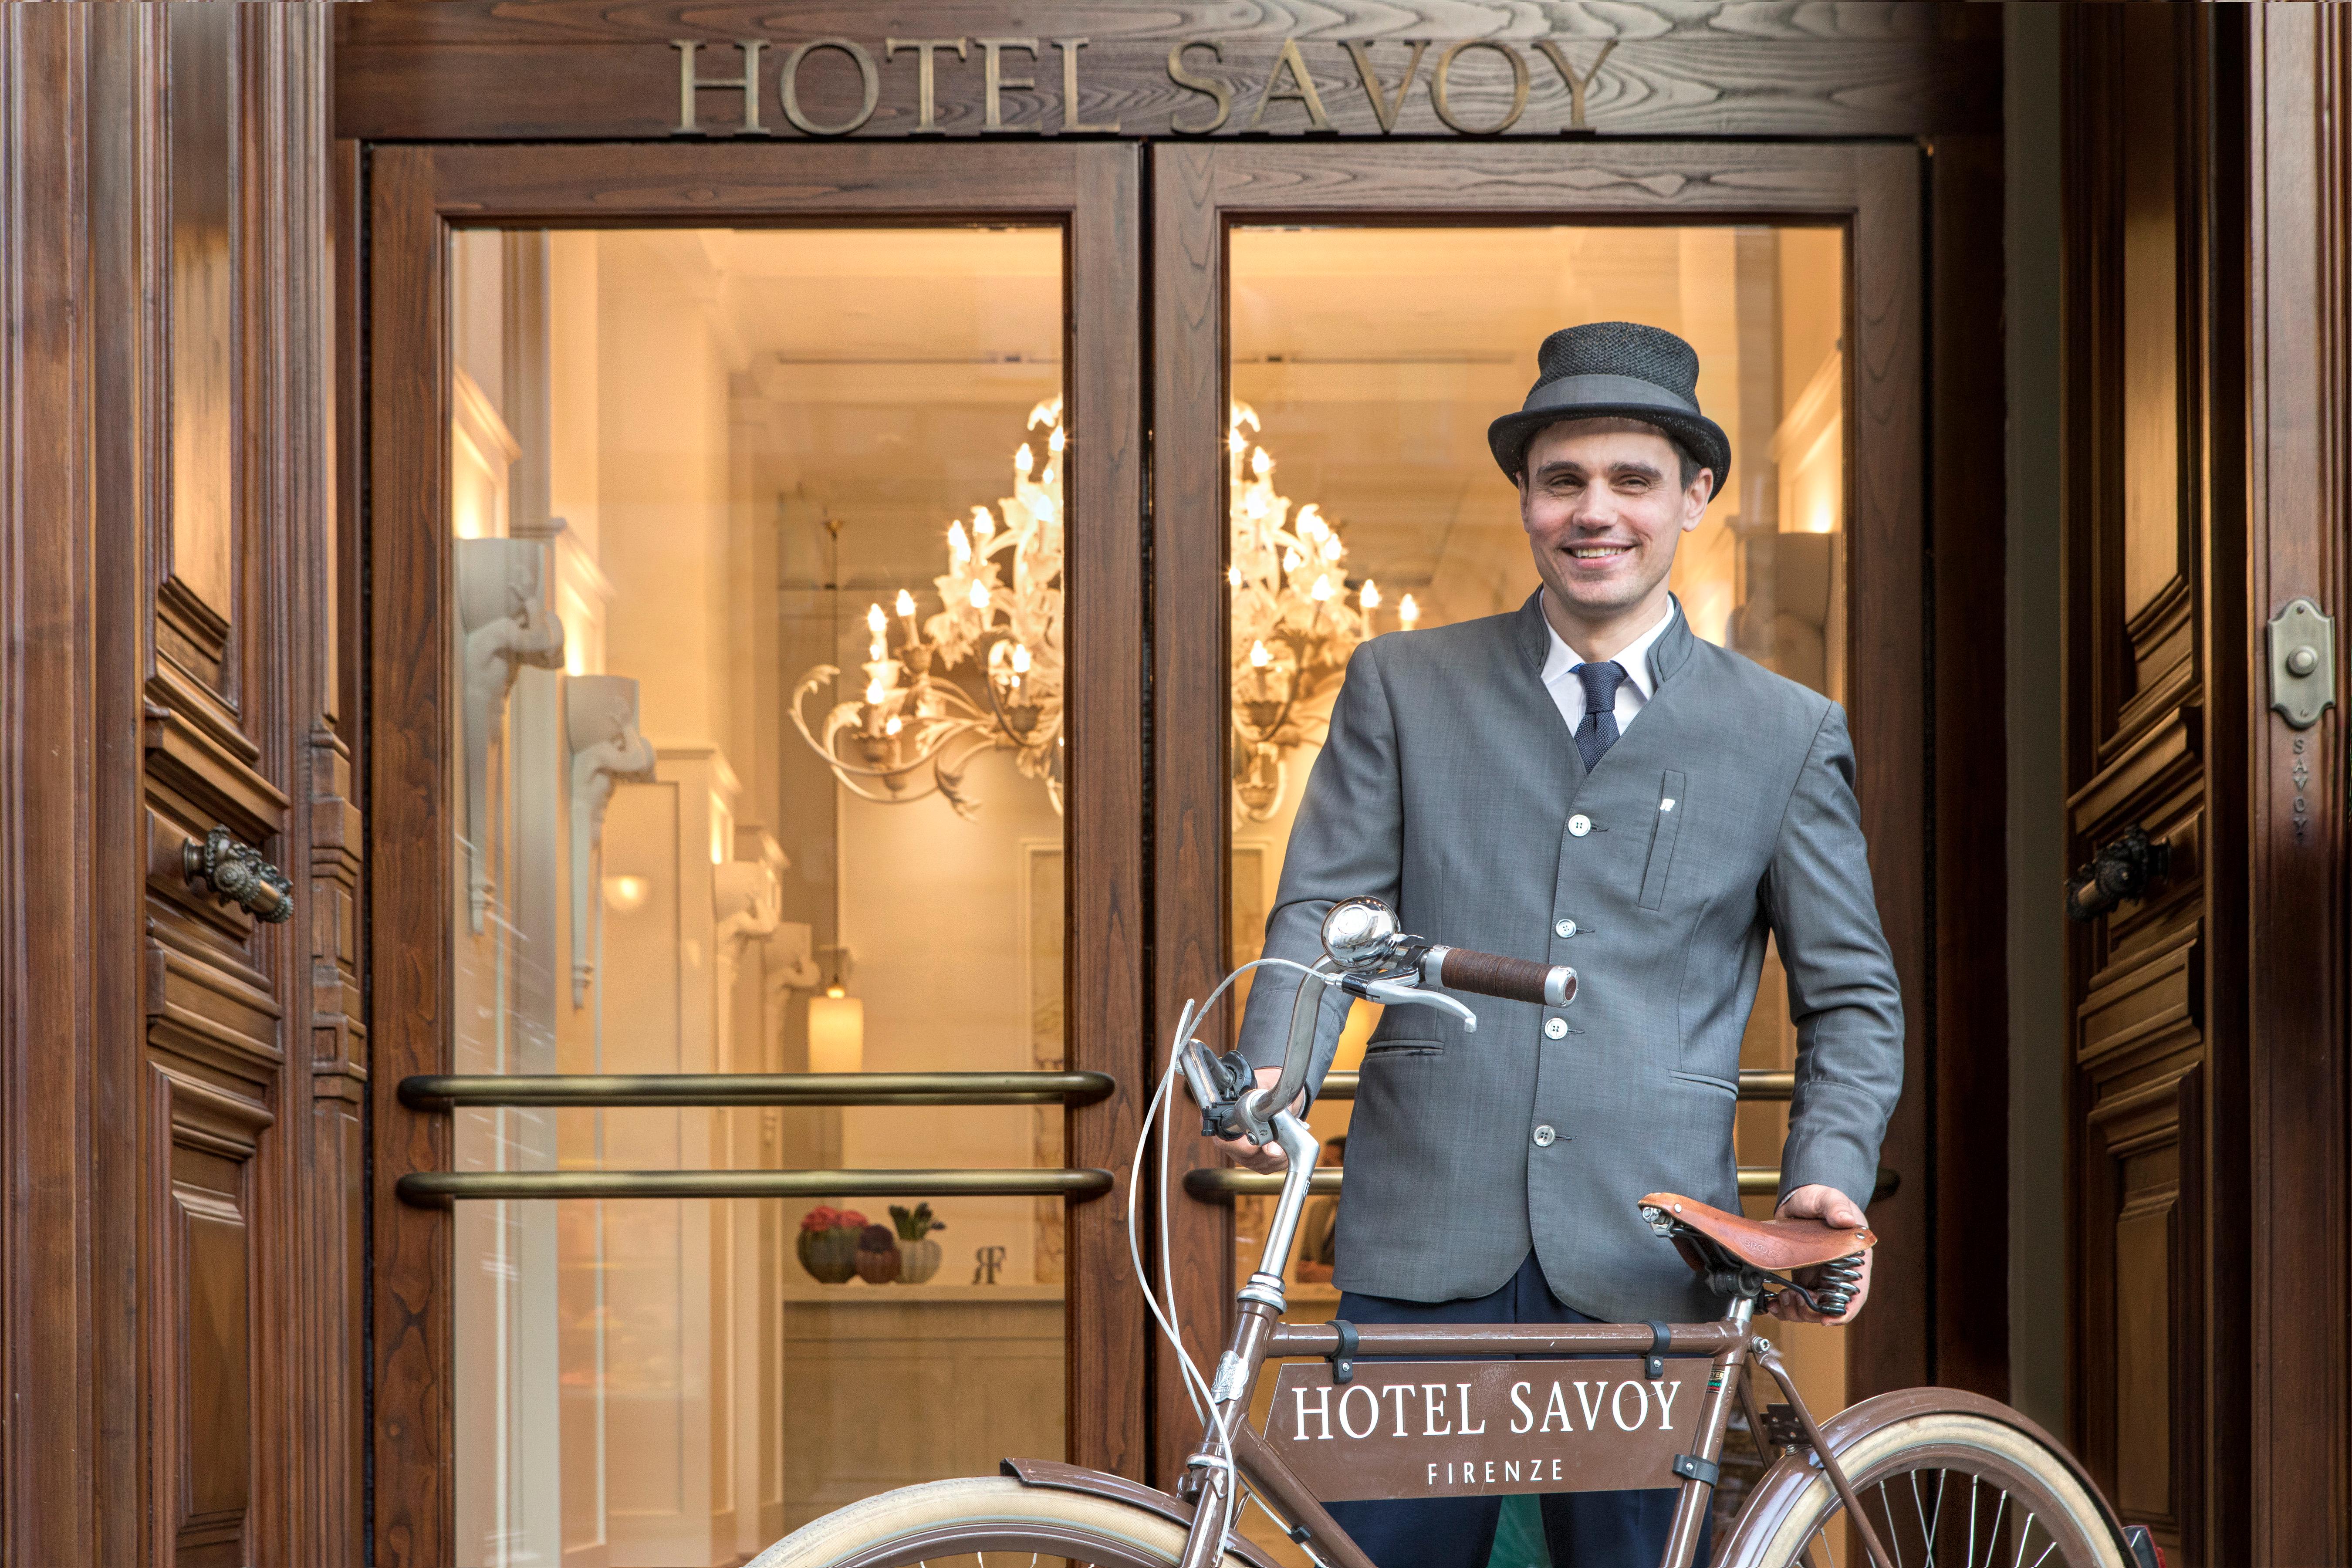 Hotel Savoy, a Rocco Forte hotel